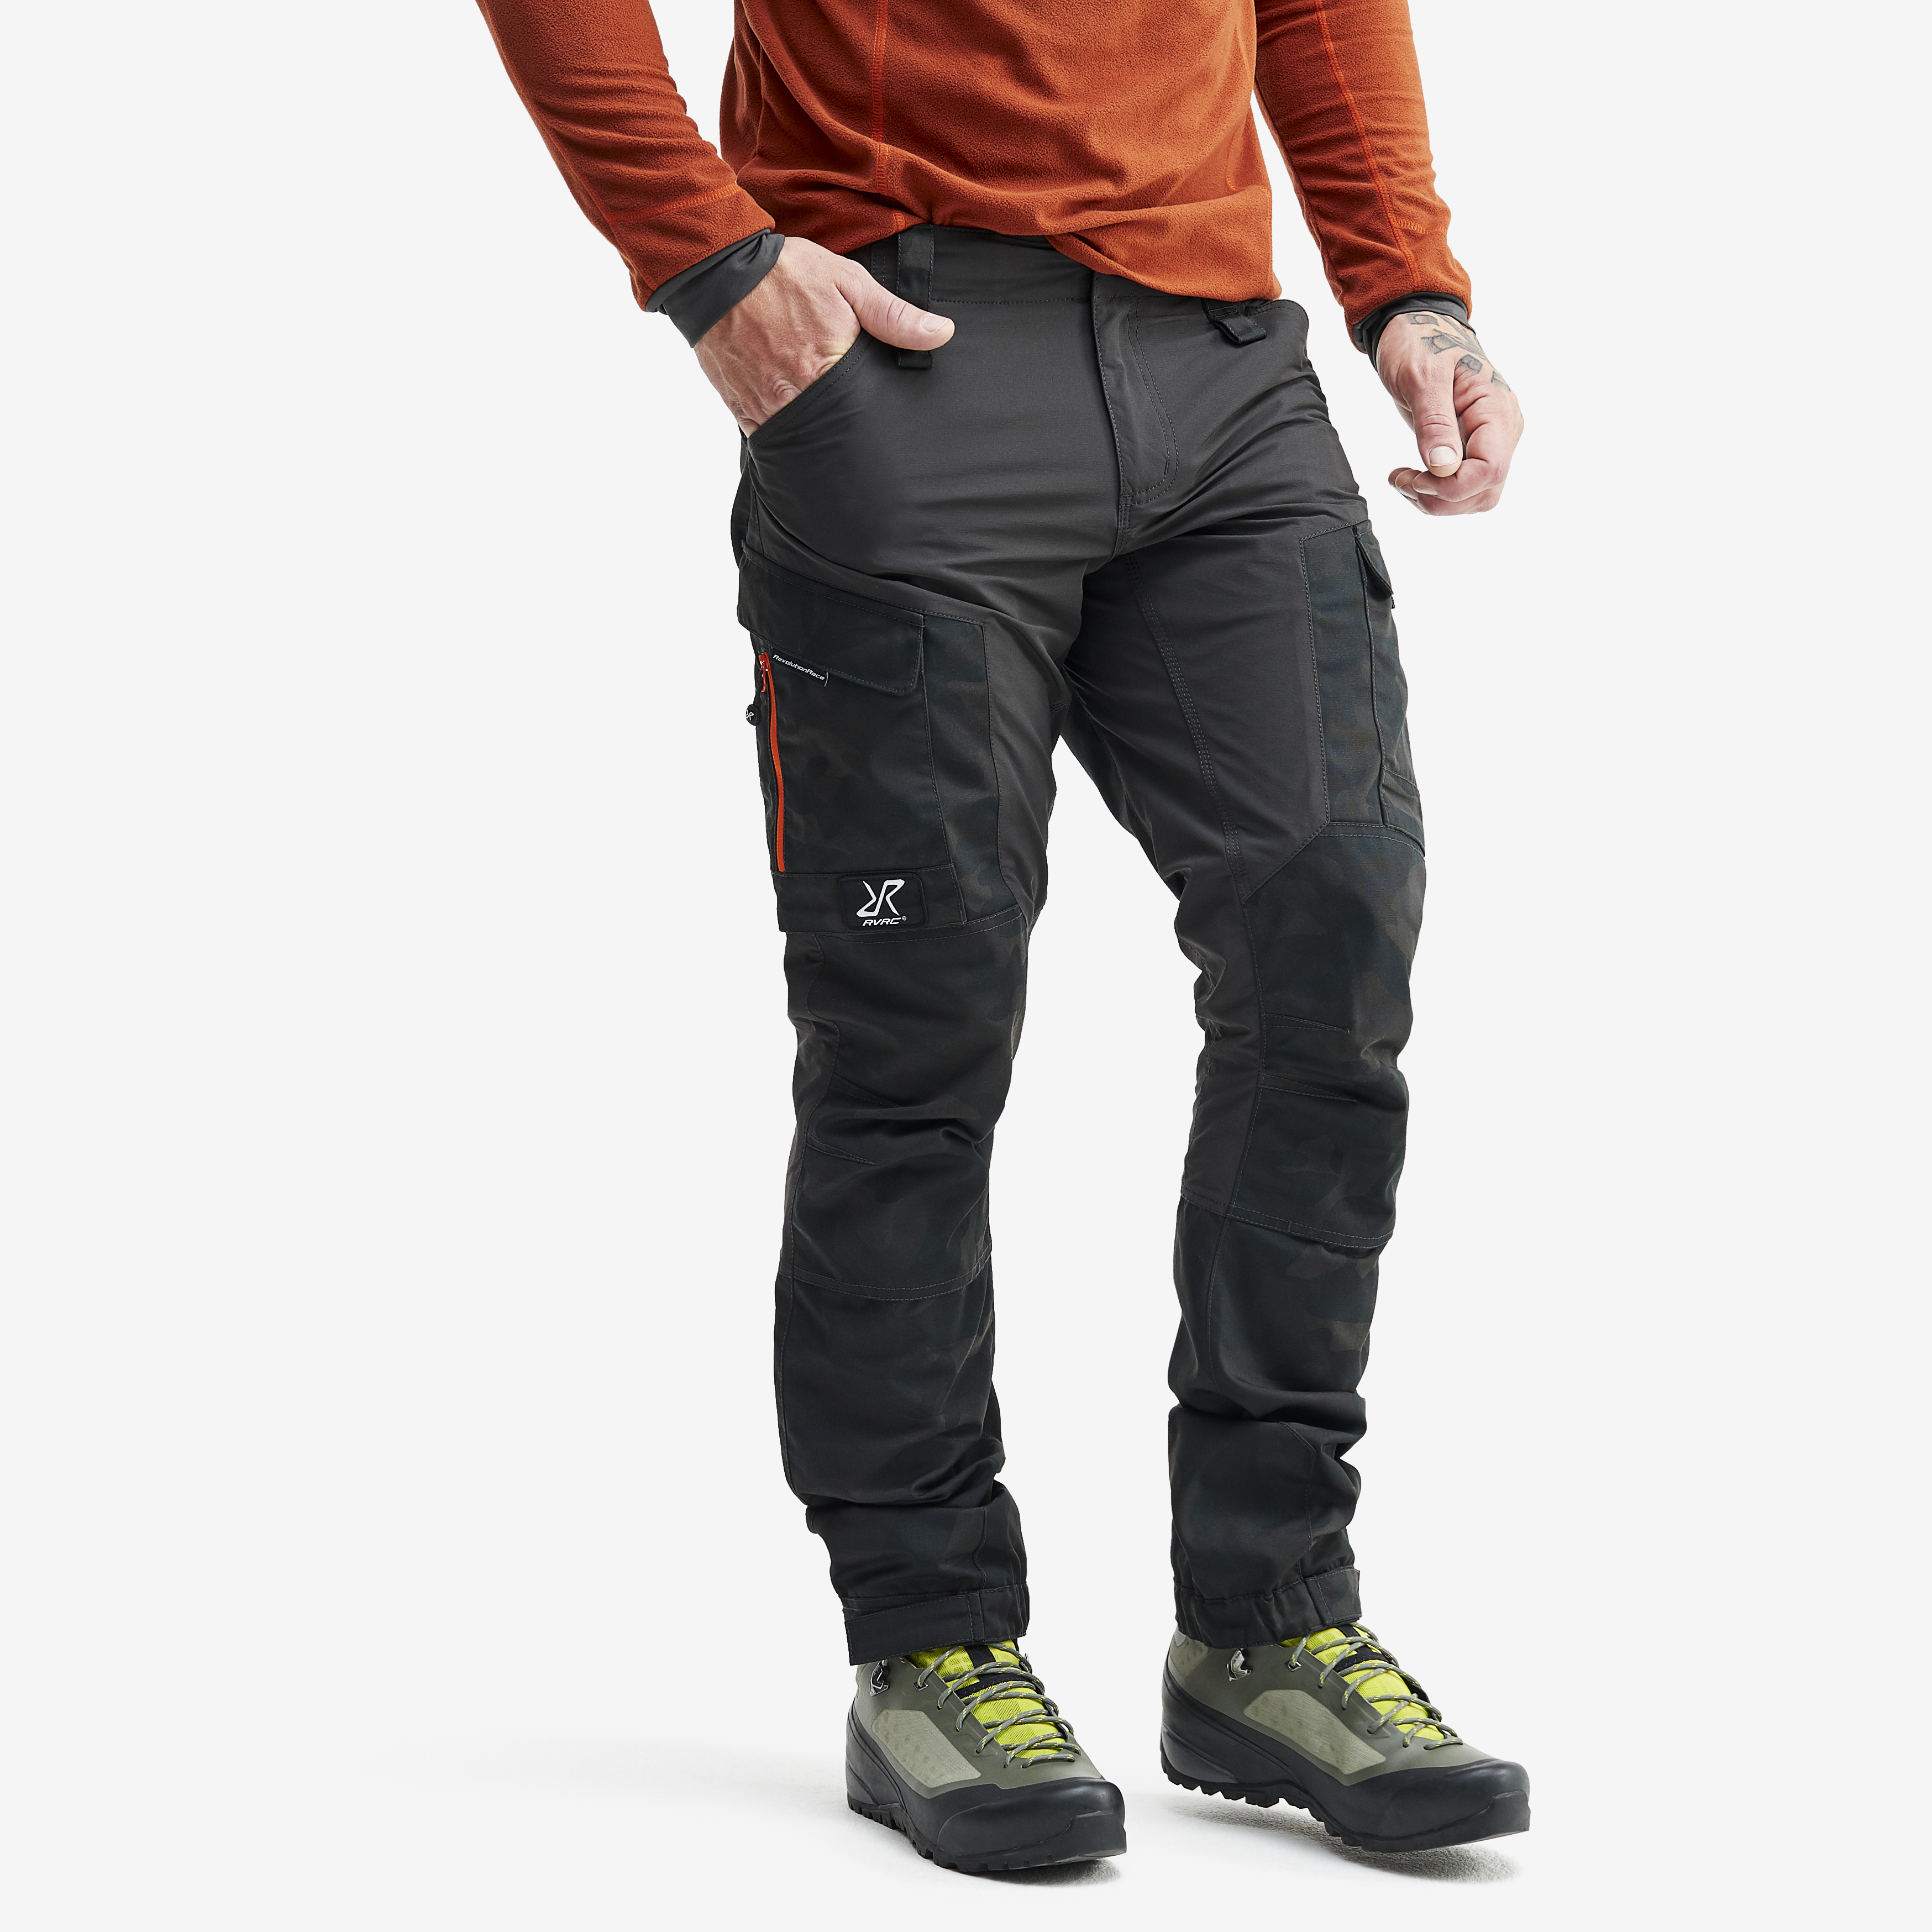 RVRC GP outdoor bukser for mænd i sort